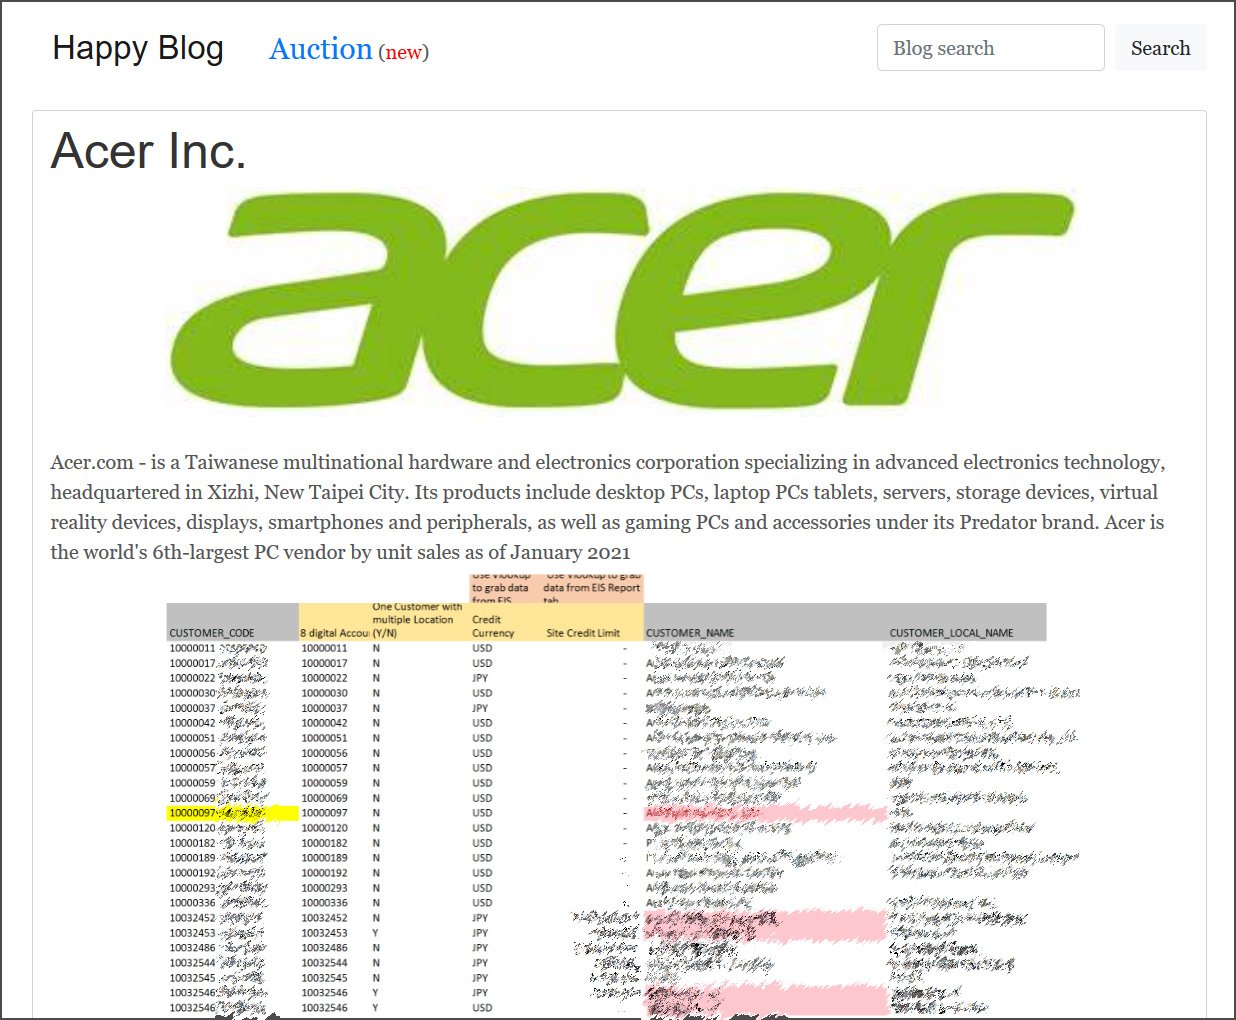 Acer data leak on REvil ransomware site